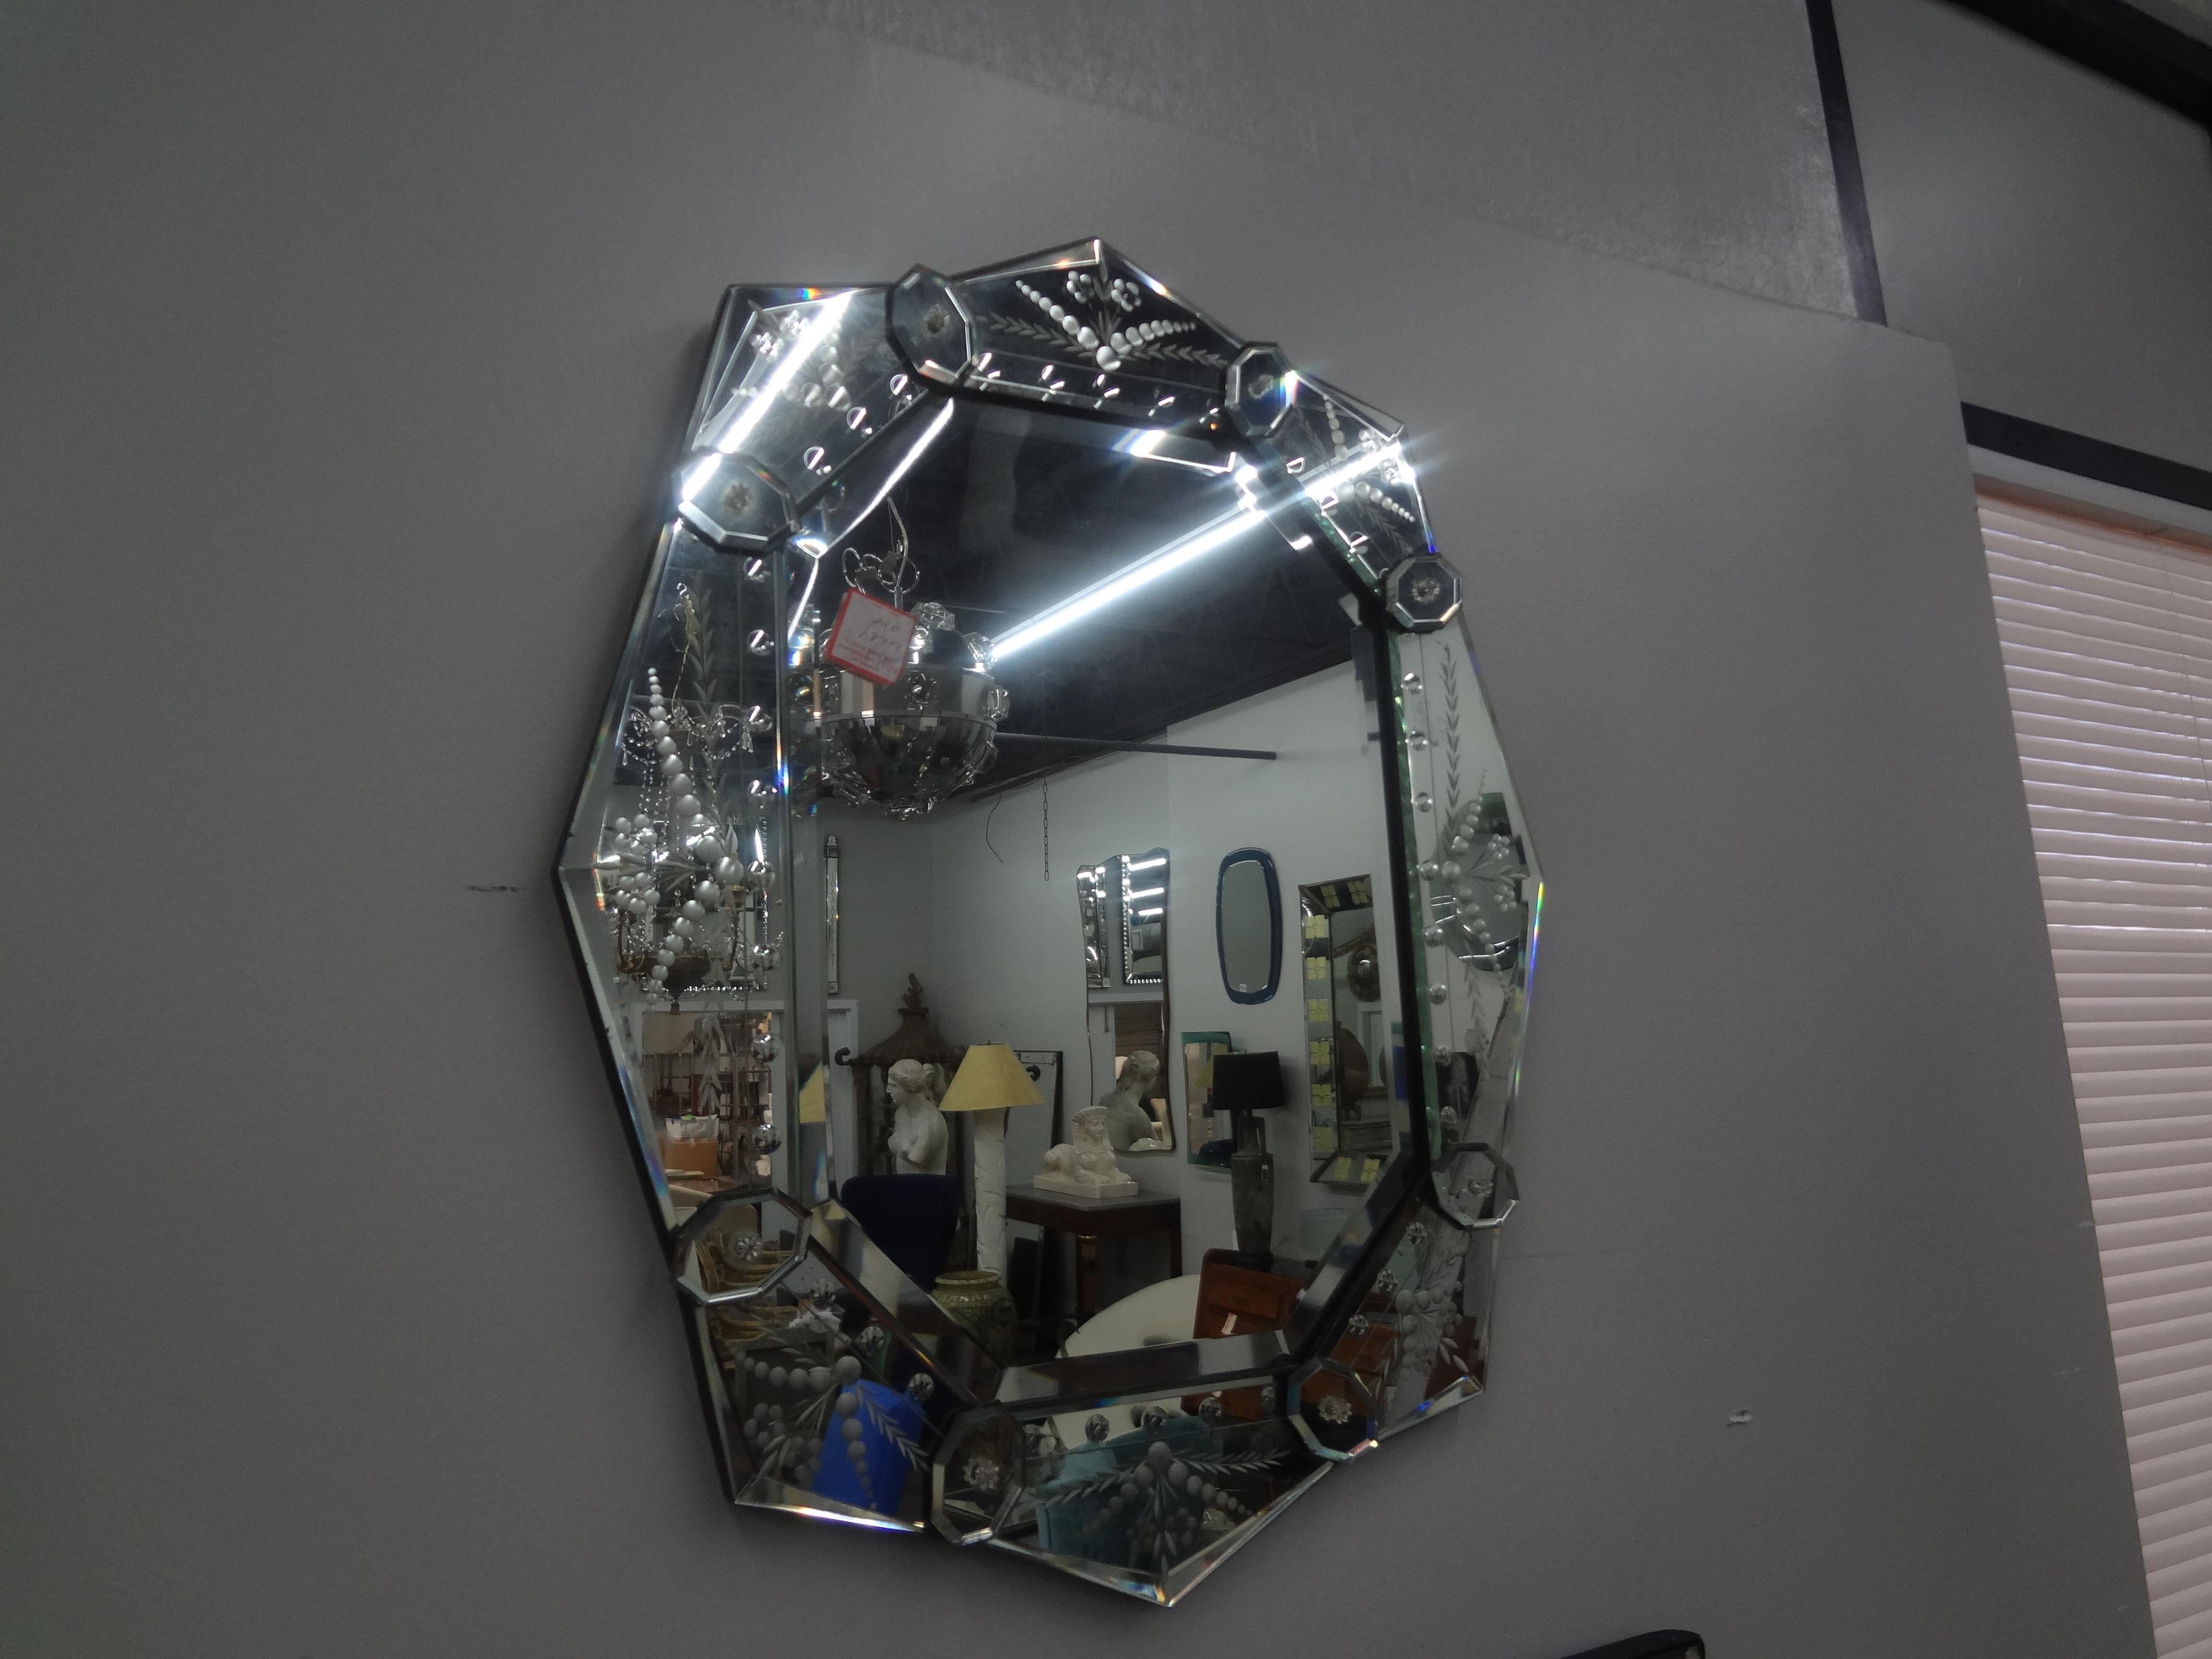 Vintage Miroir Vénitien gravé et biseauté.
Ce miroir vénitien de forme inhabituelle présente un périmètre biseauté et un panneau central biseauté.
Miroir parfait pour une salle d'eau ou un dressing.
